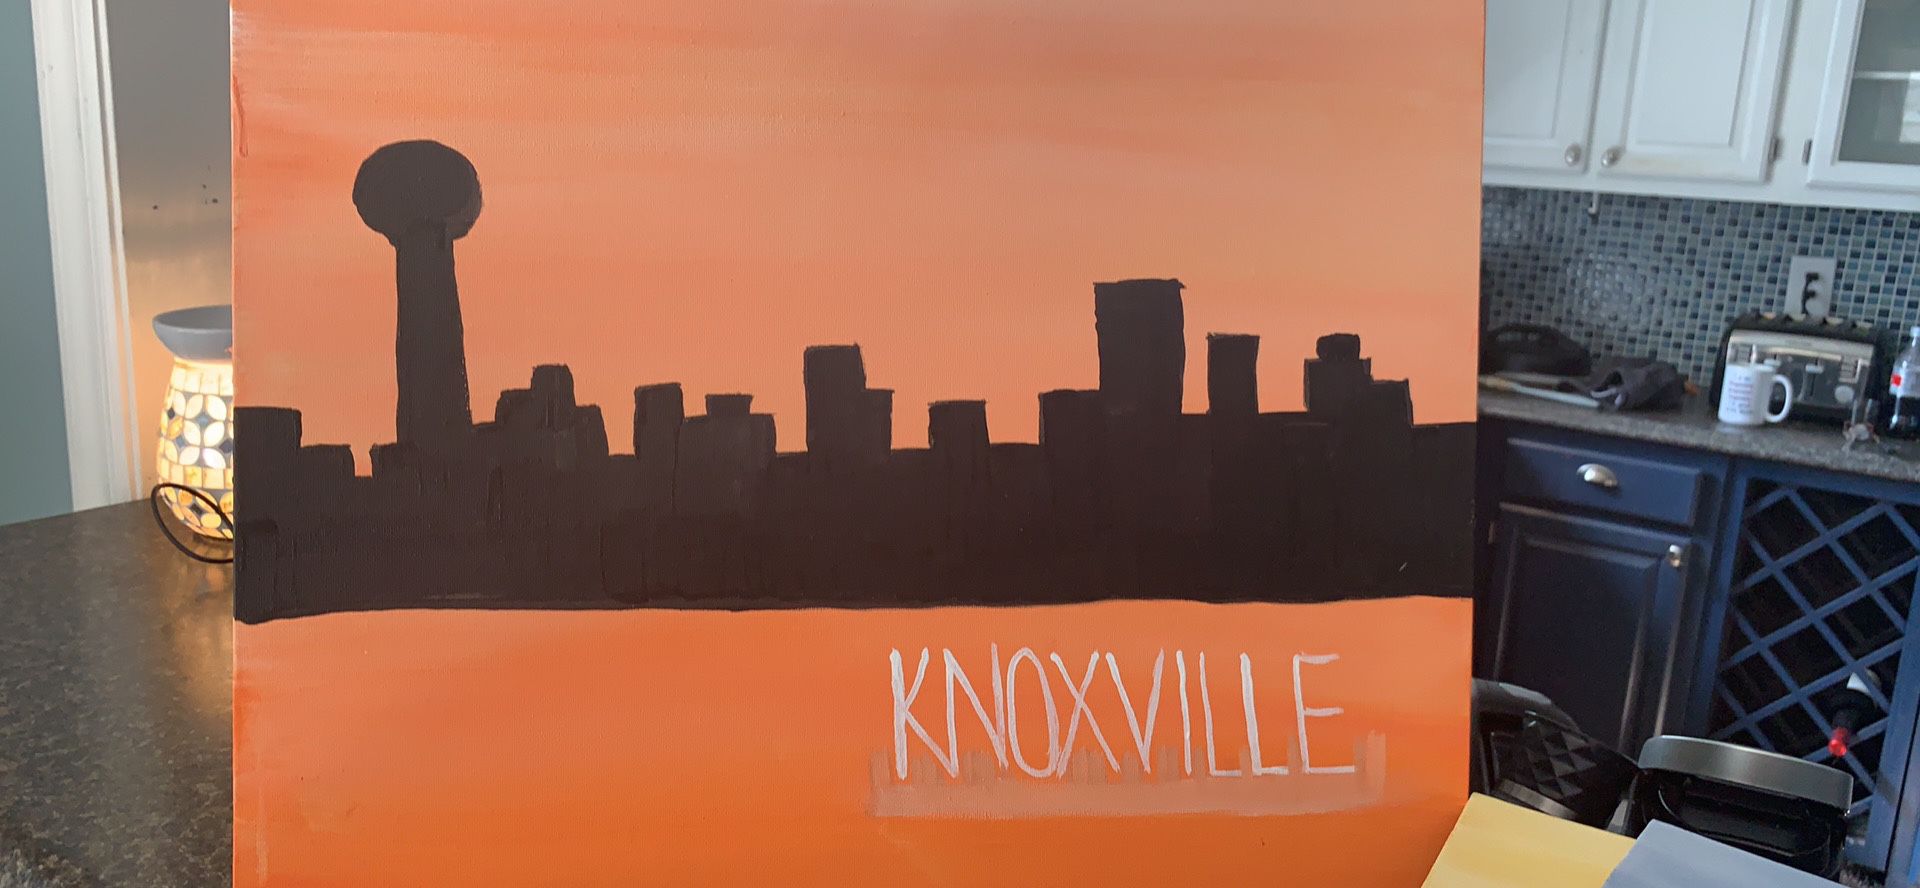 City Skyline paintings